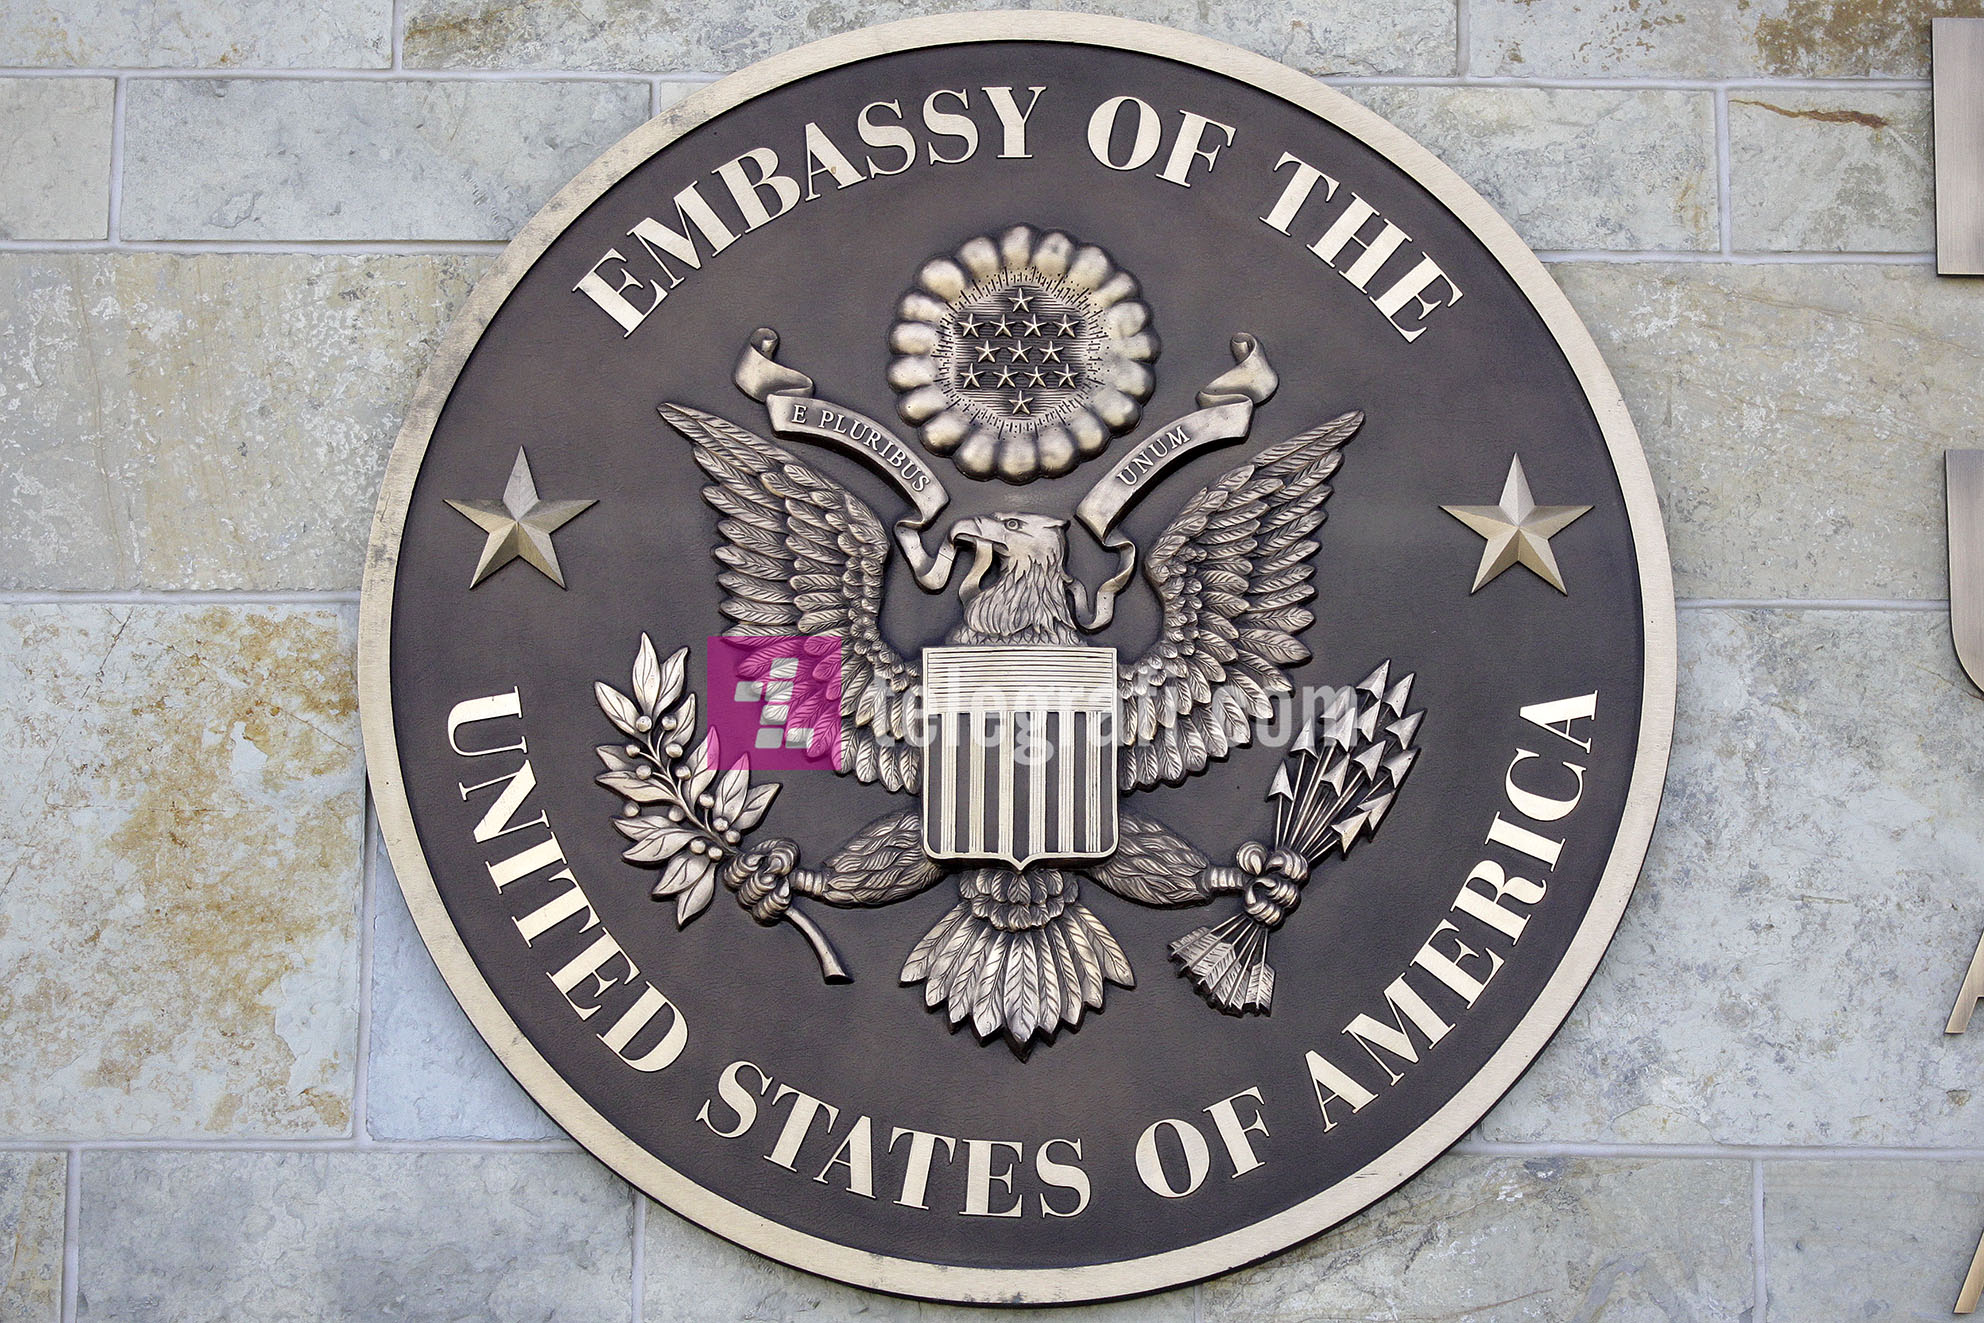 Ambasada amerikane: Në Ditën e Kushtetutës, kujtojmë pritjet e kosovarëve për demokraci